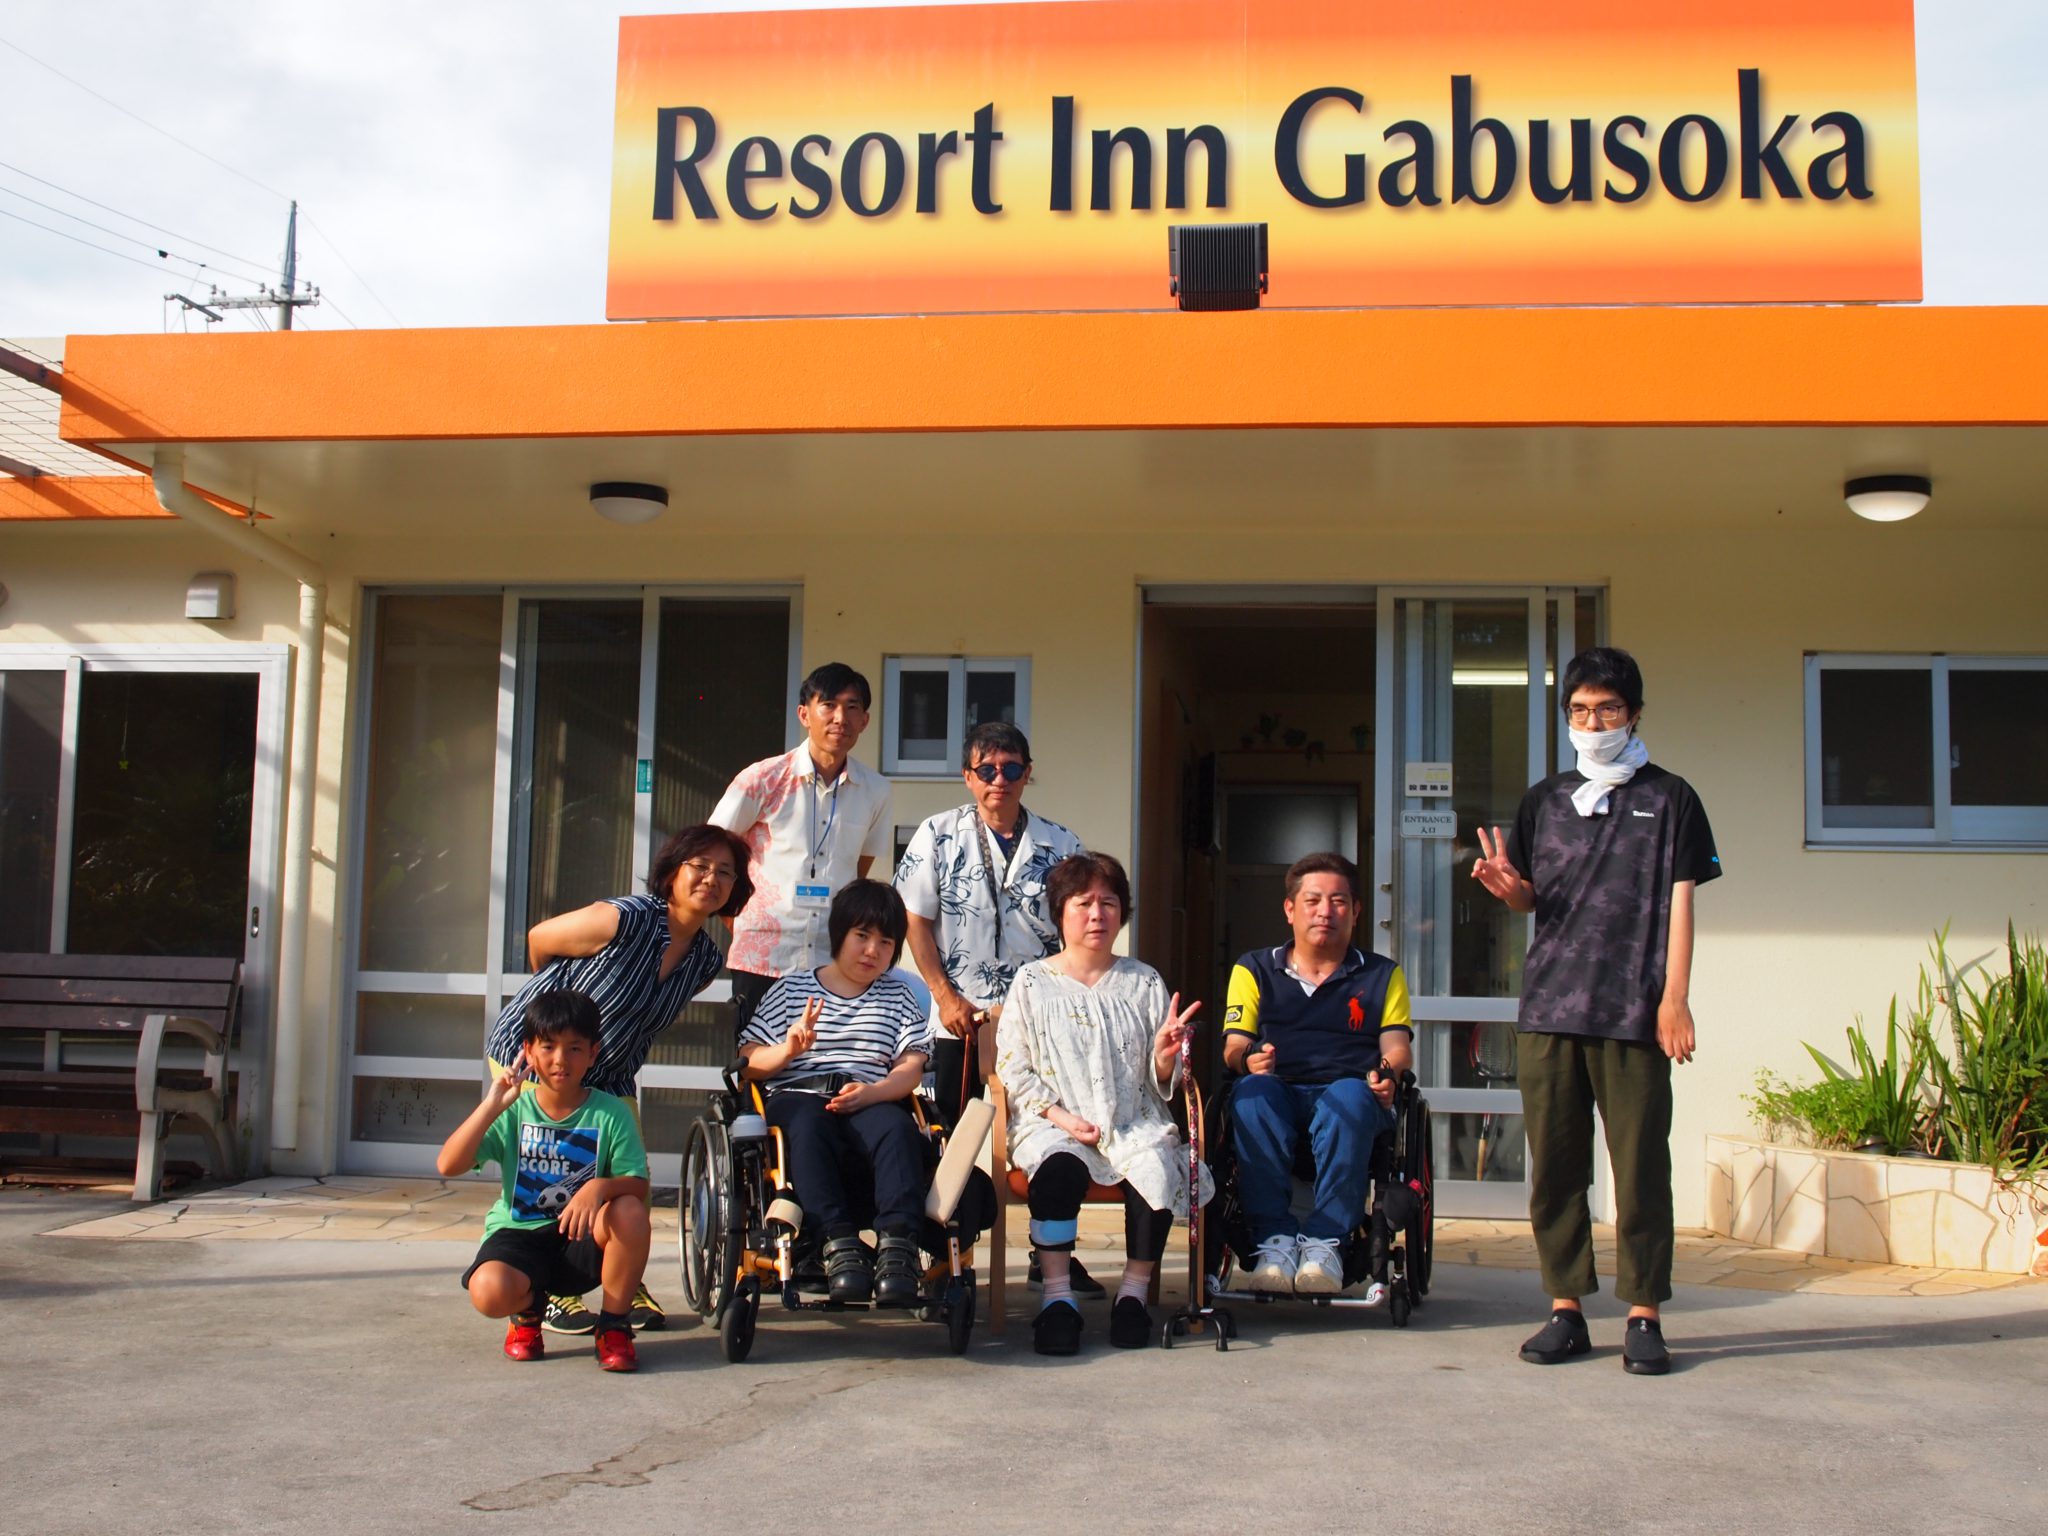 Resort Inn Gabusoka前で集合写真